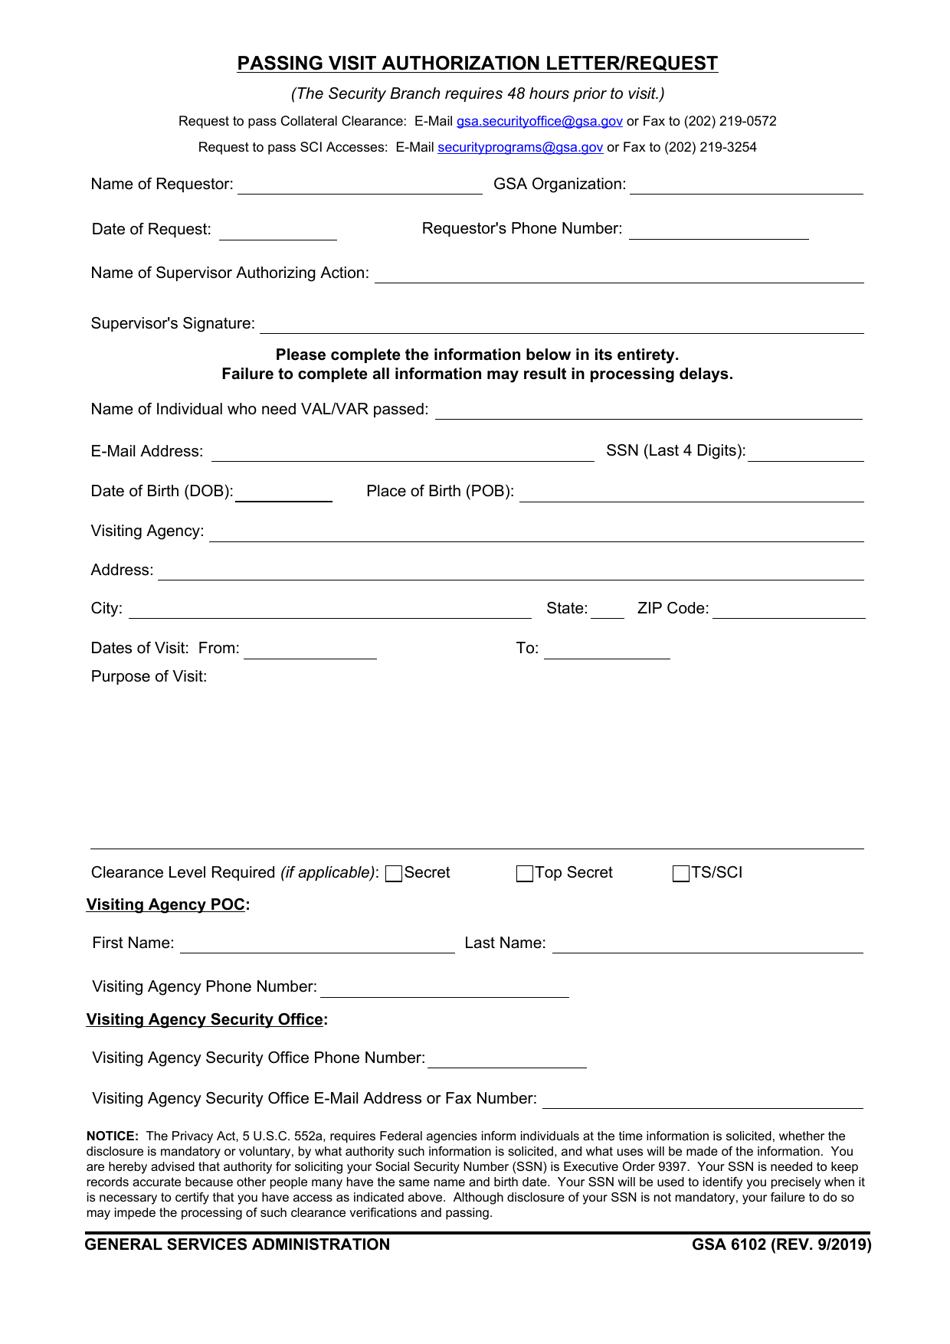 GSA Form 6102 Passing Visit Authorization Letter / Request, Page 1